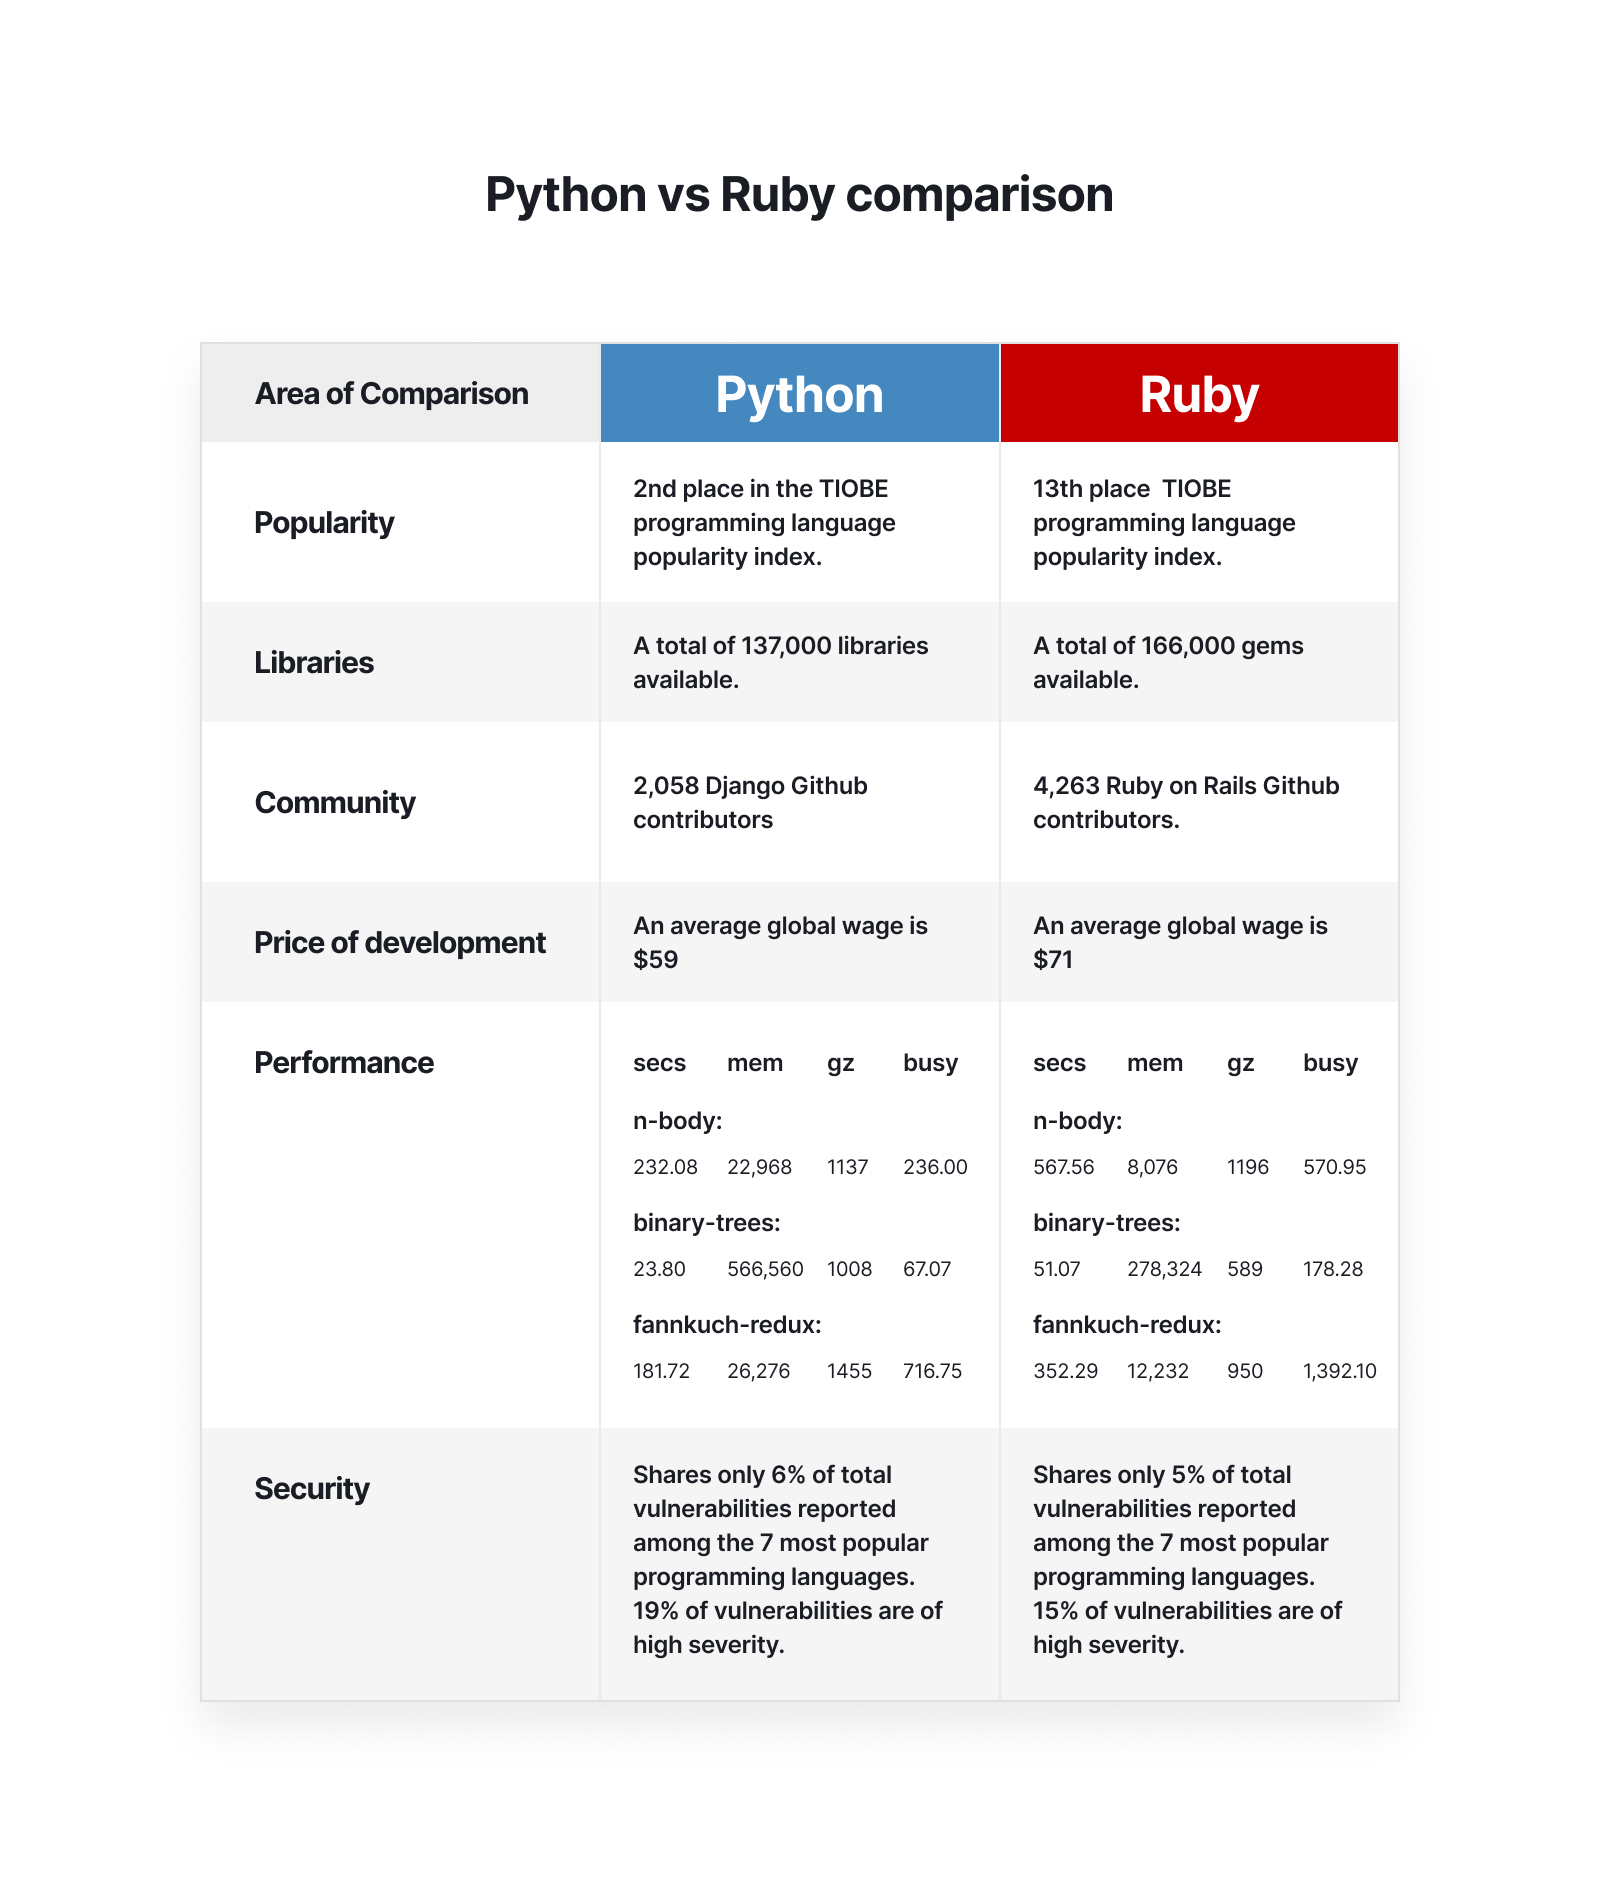 python vs ruby on rails